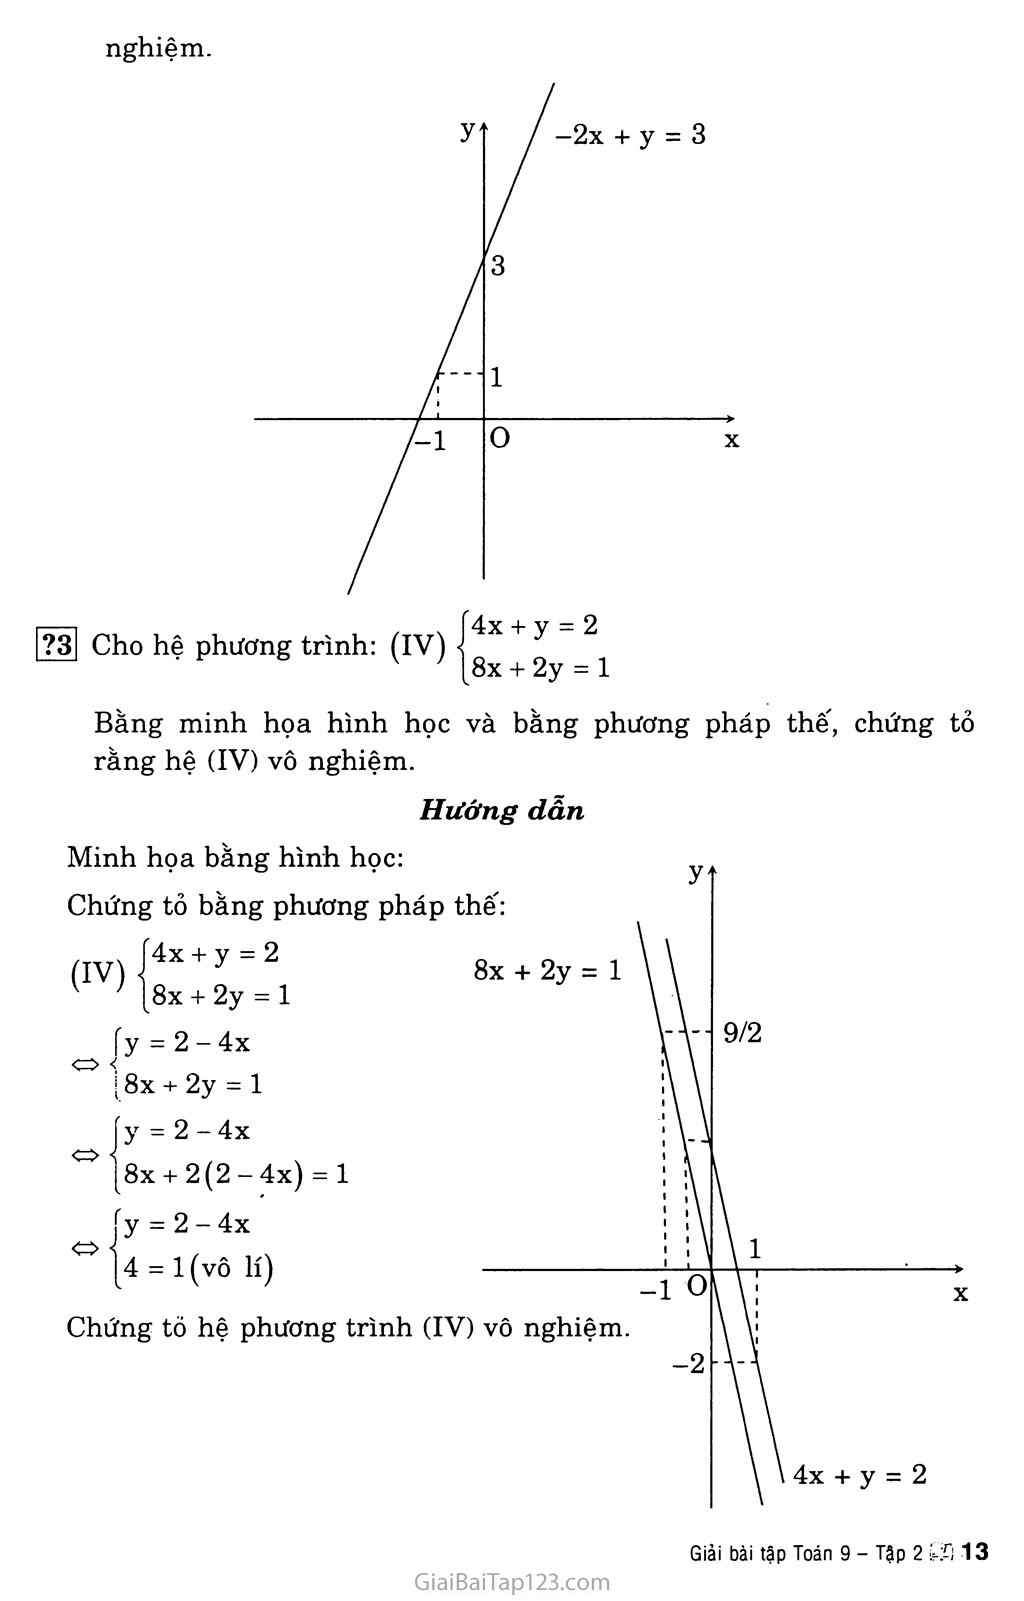 Bài 3. Giải hệ phương trình bằng phương pháp thay thế trang 2